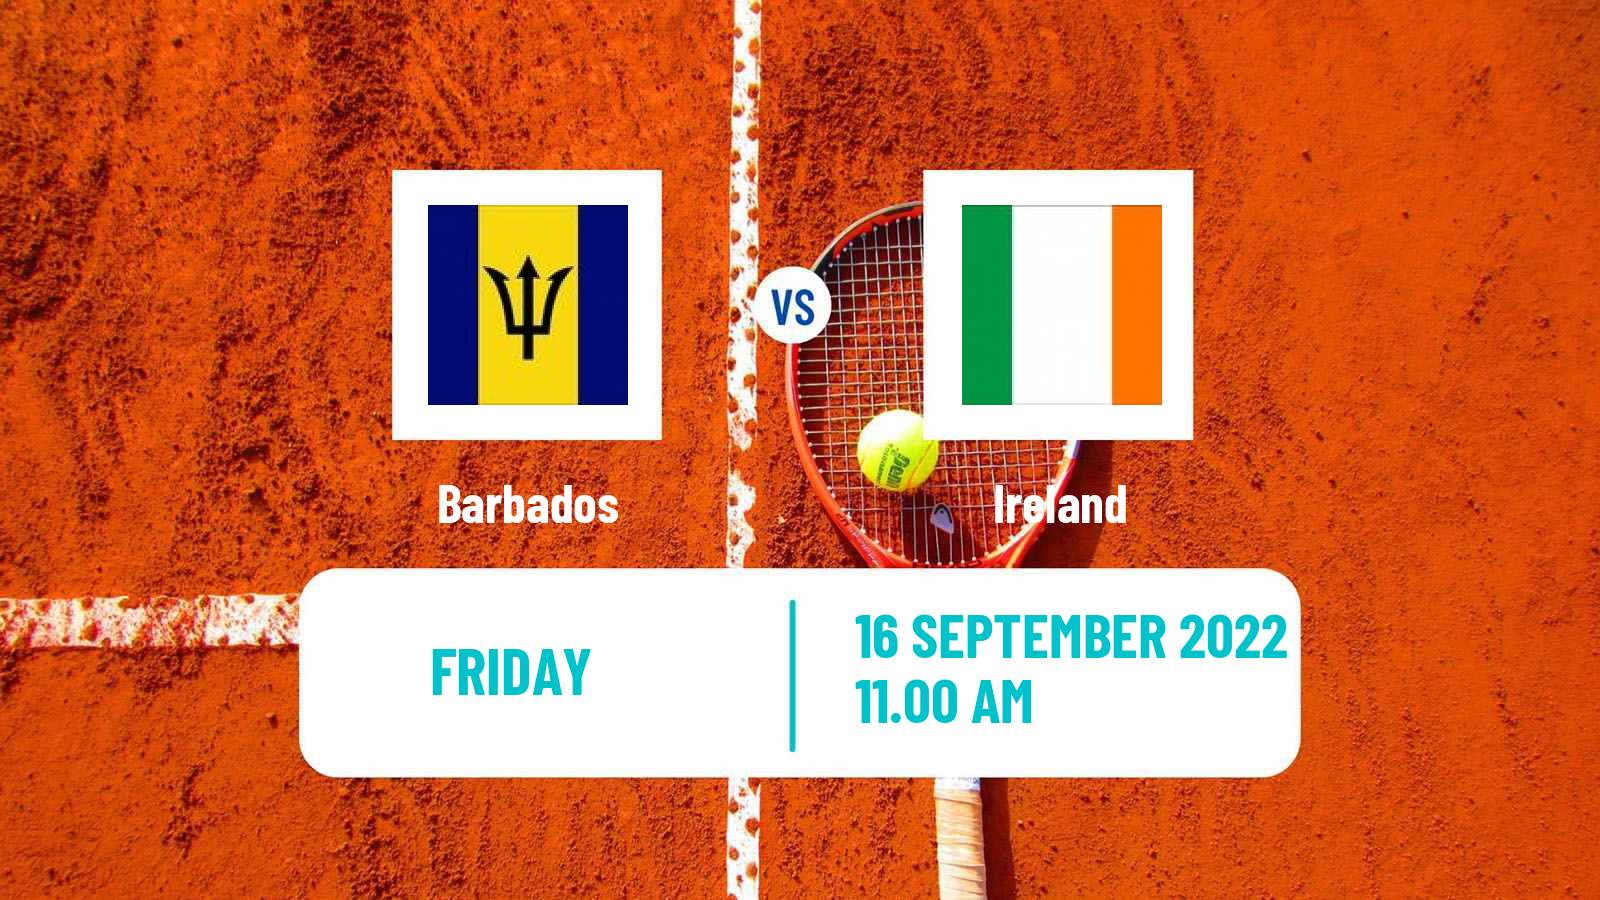 Tennis Davis Cup World Group II Teams Barbados - Ireland